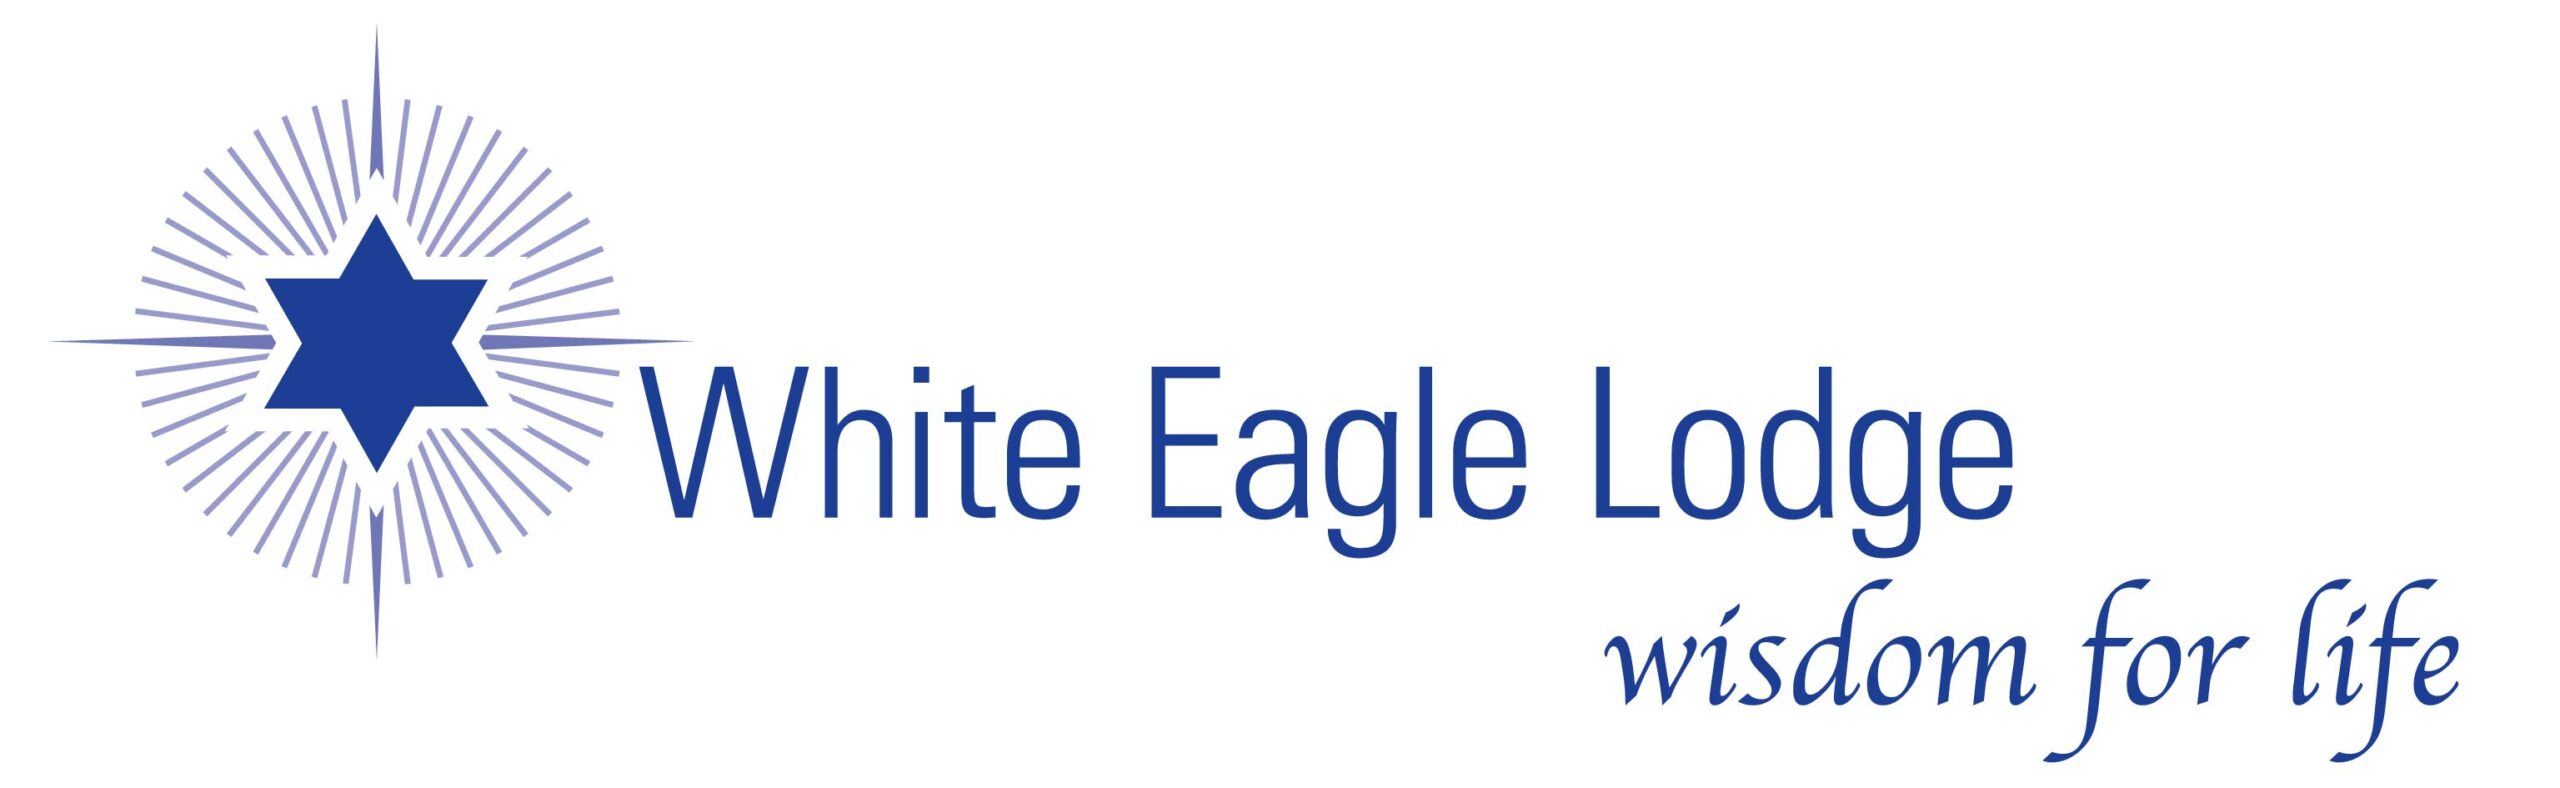 White Eagle Lodge